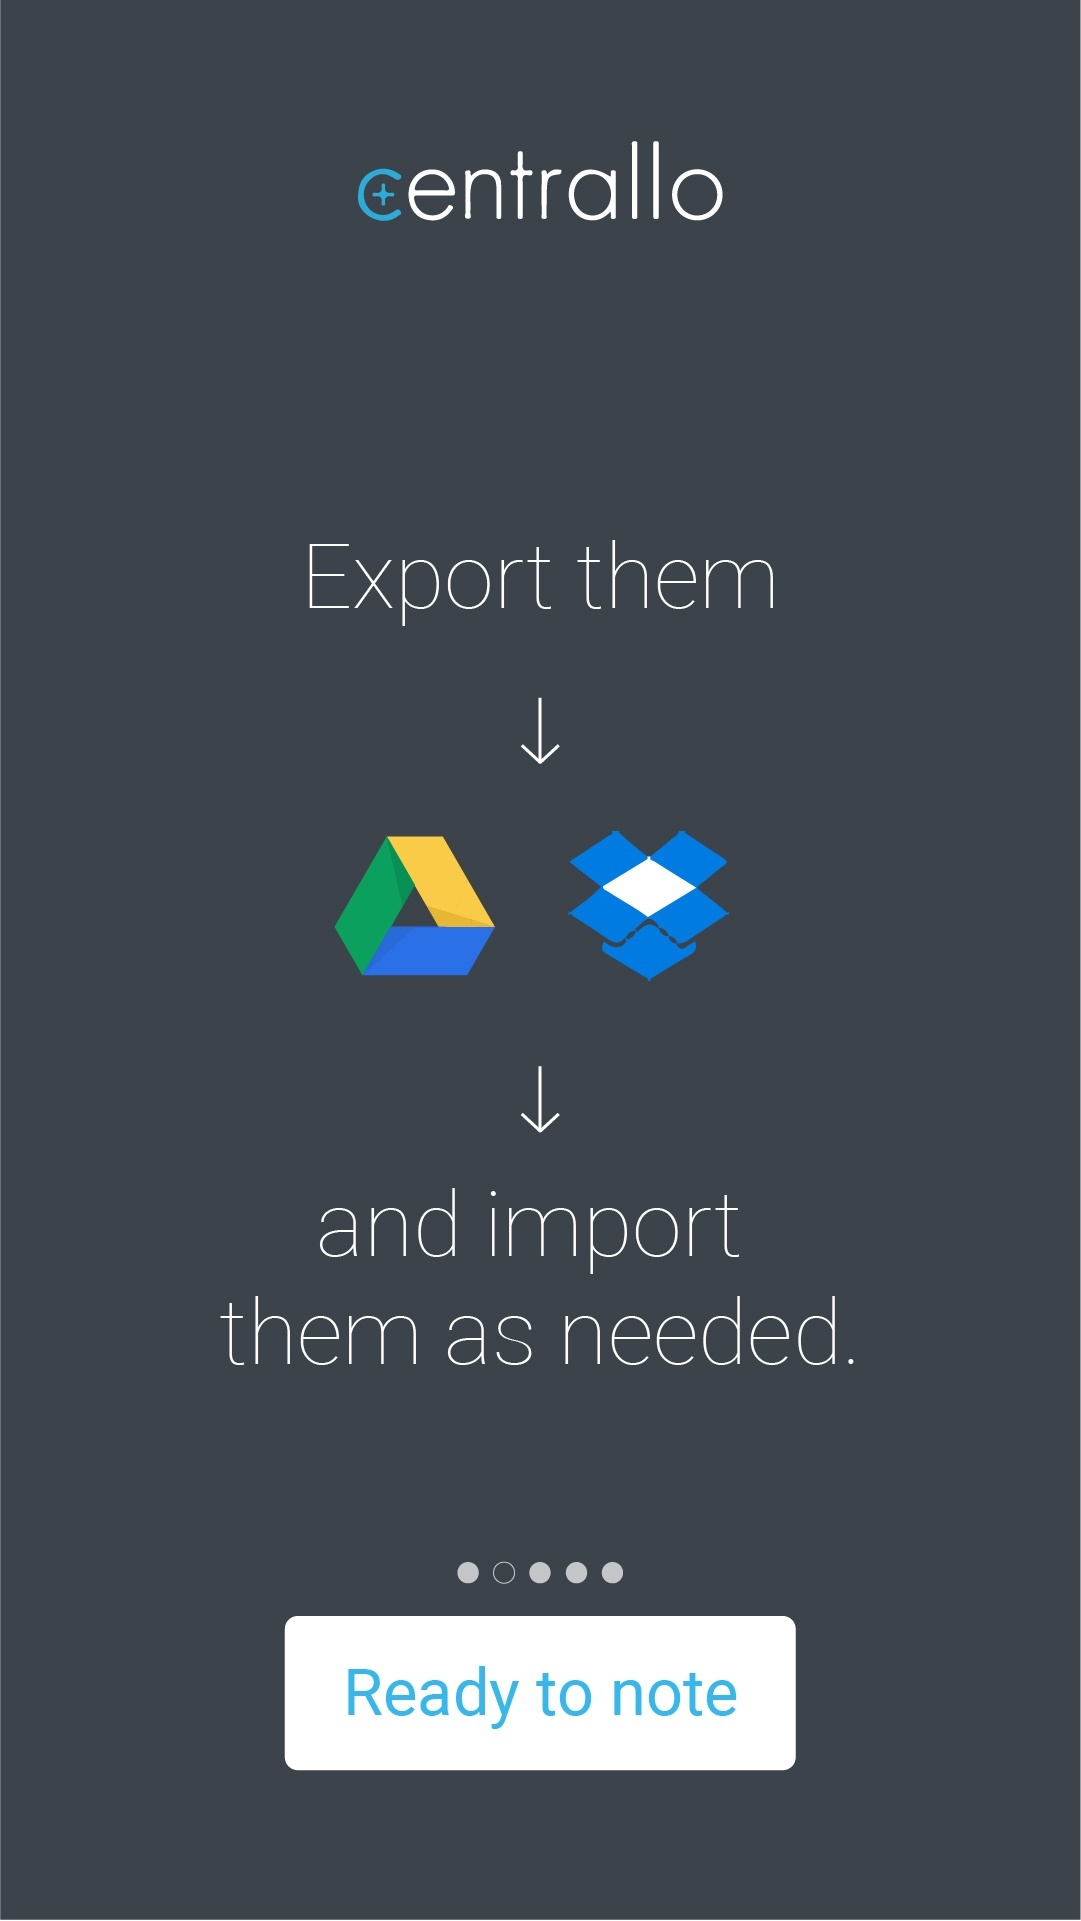 Ecran de présentation où il est écrit 'Export them, import them as needed.'